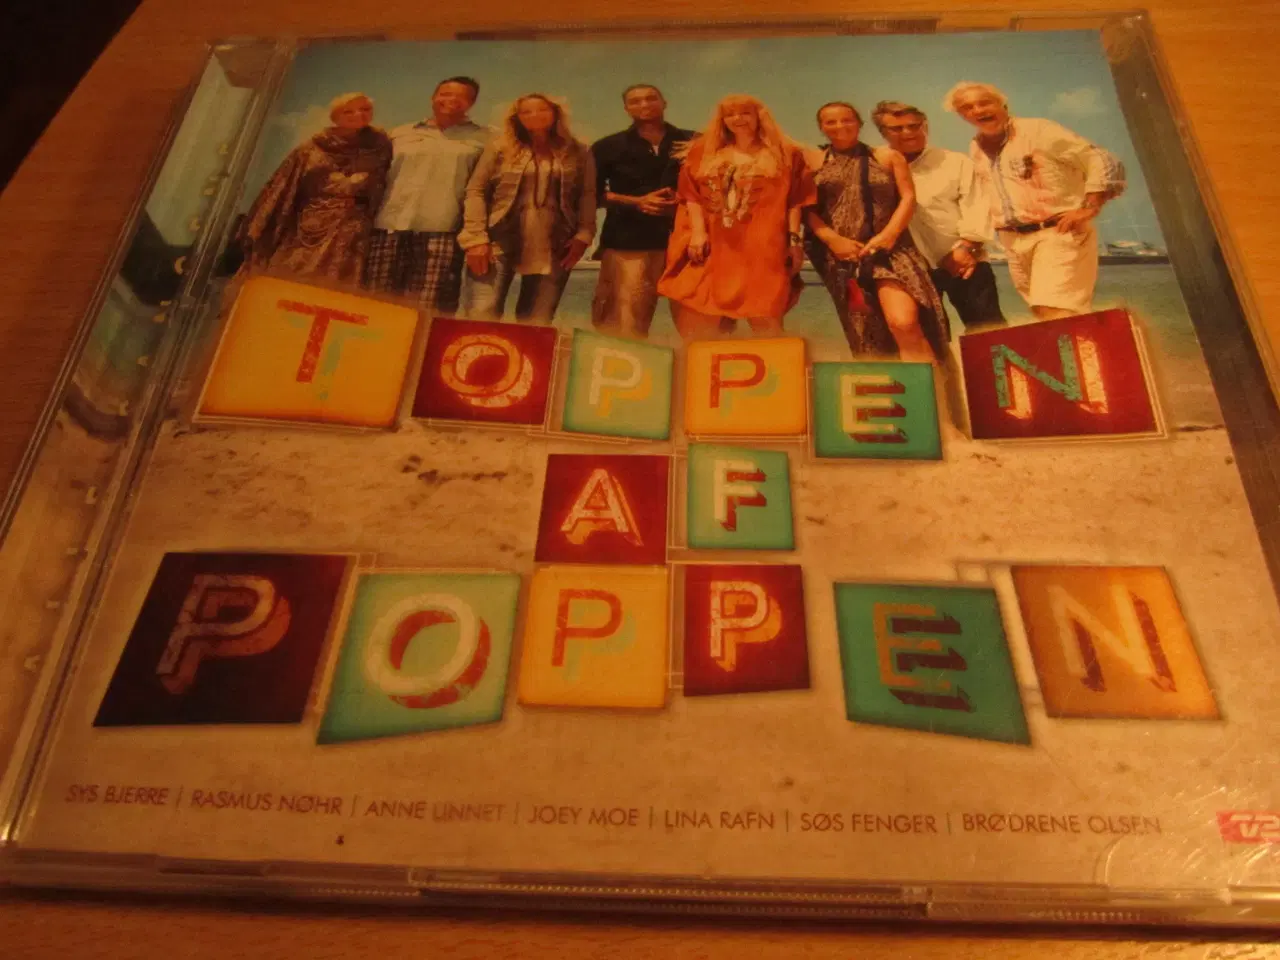 Billede 2 - TOPPEN AF POPPEN. 2 x CD.